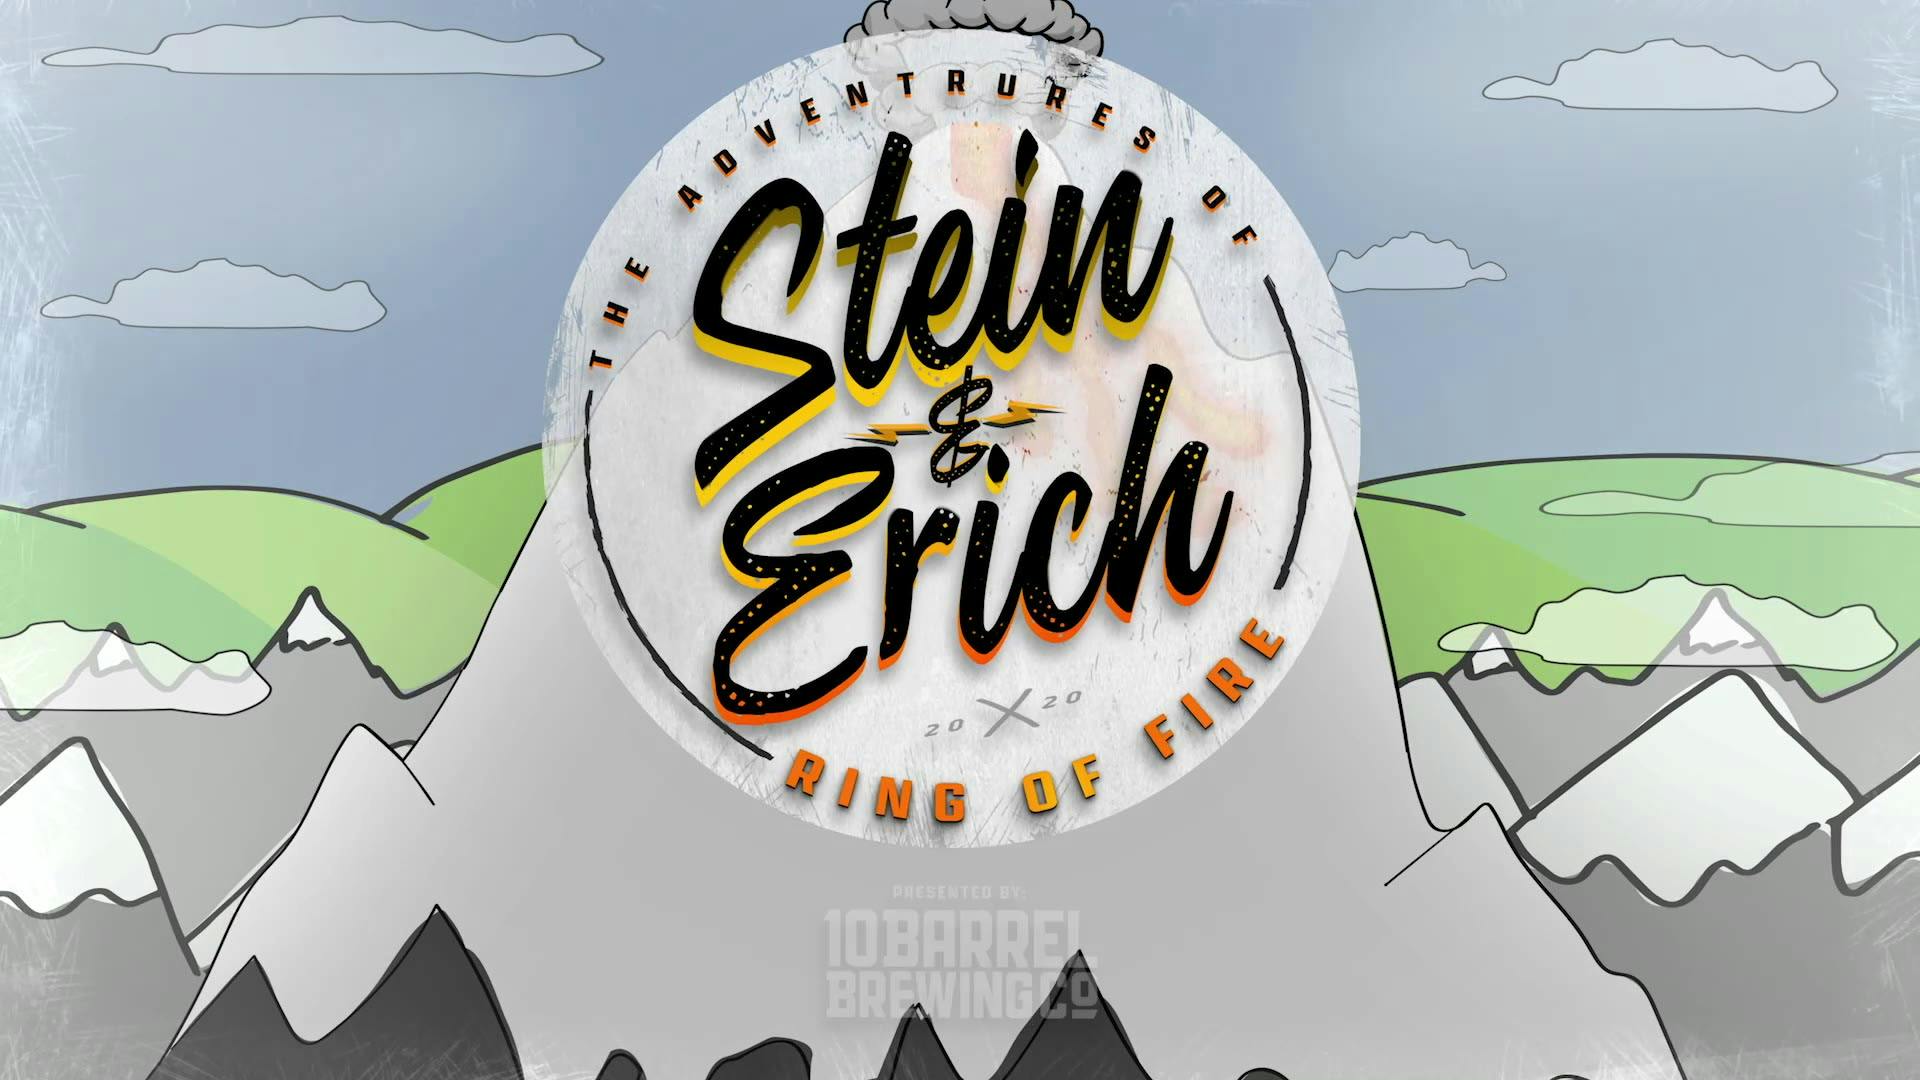 Stein & Erich: Ring of Fire Trailer